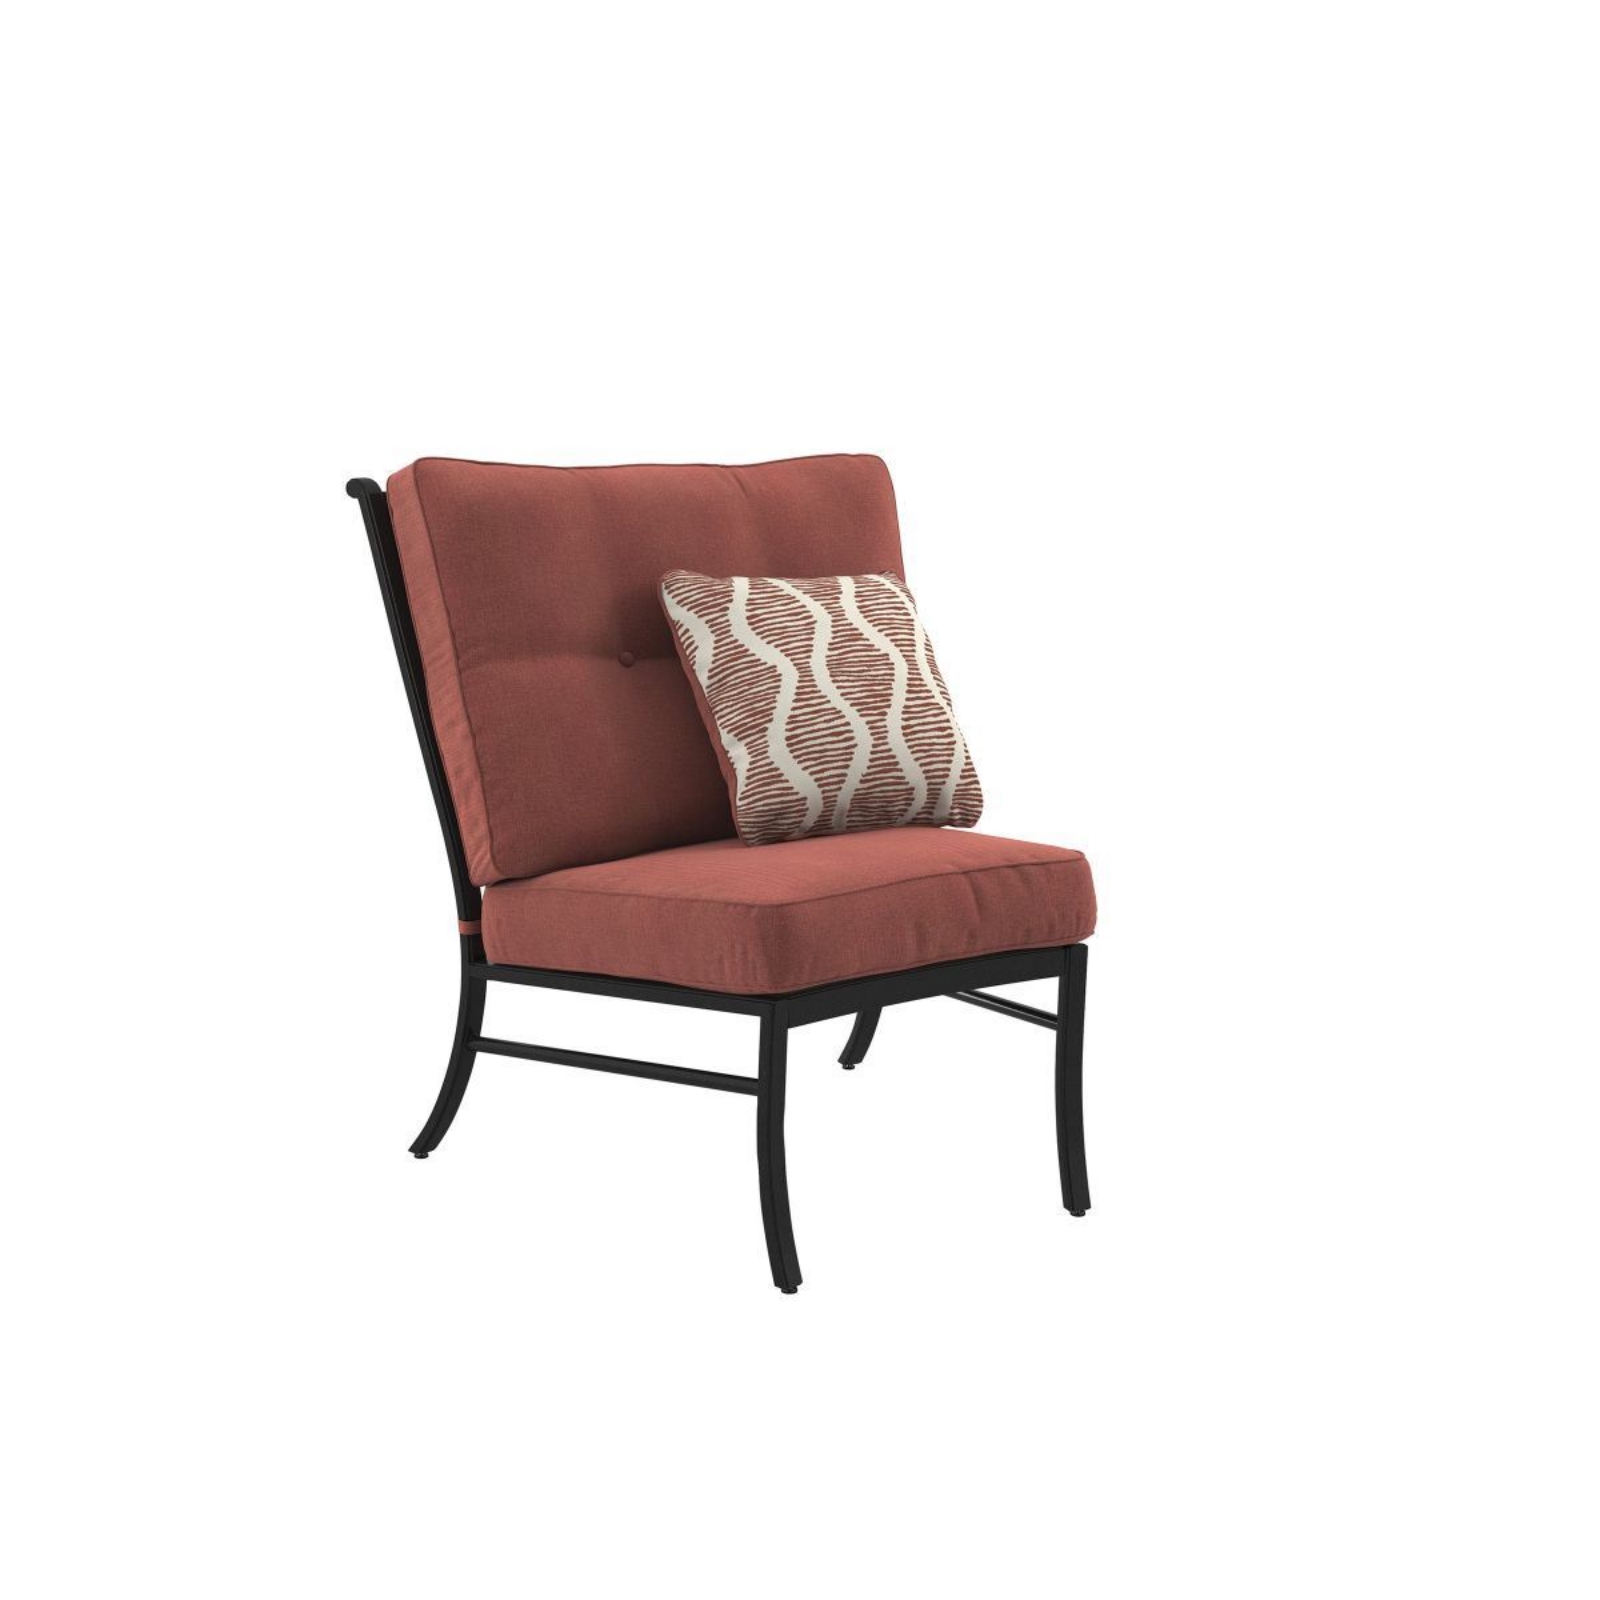 Picture of Burnella Patio Chair